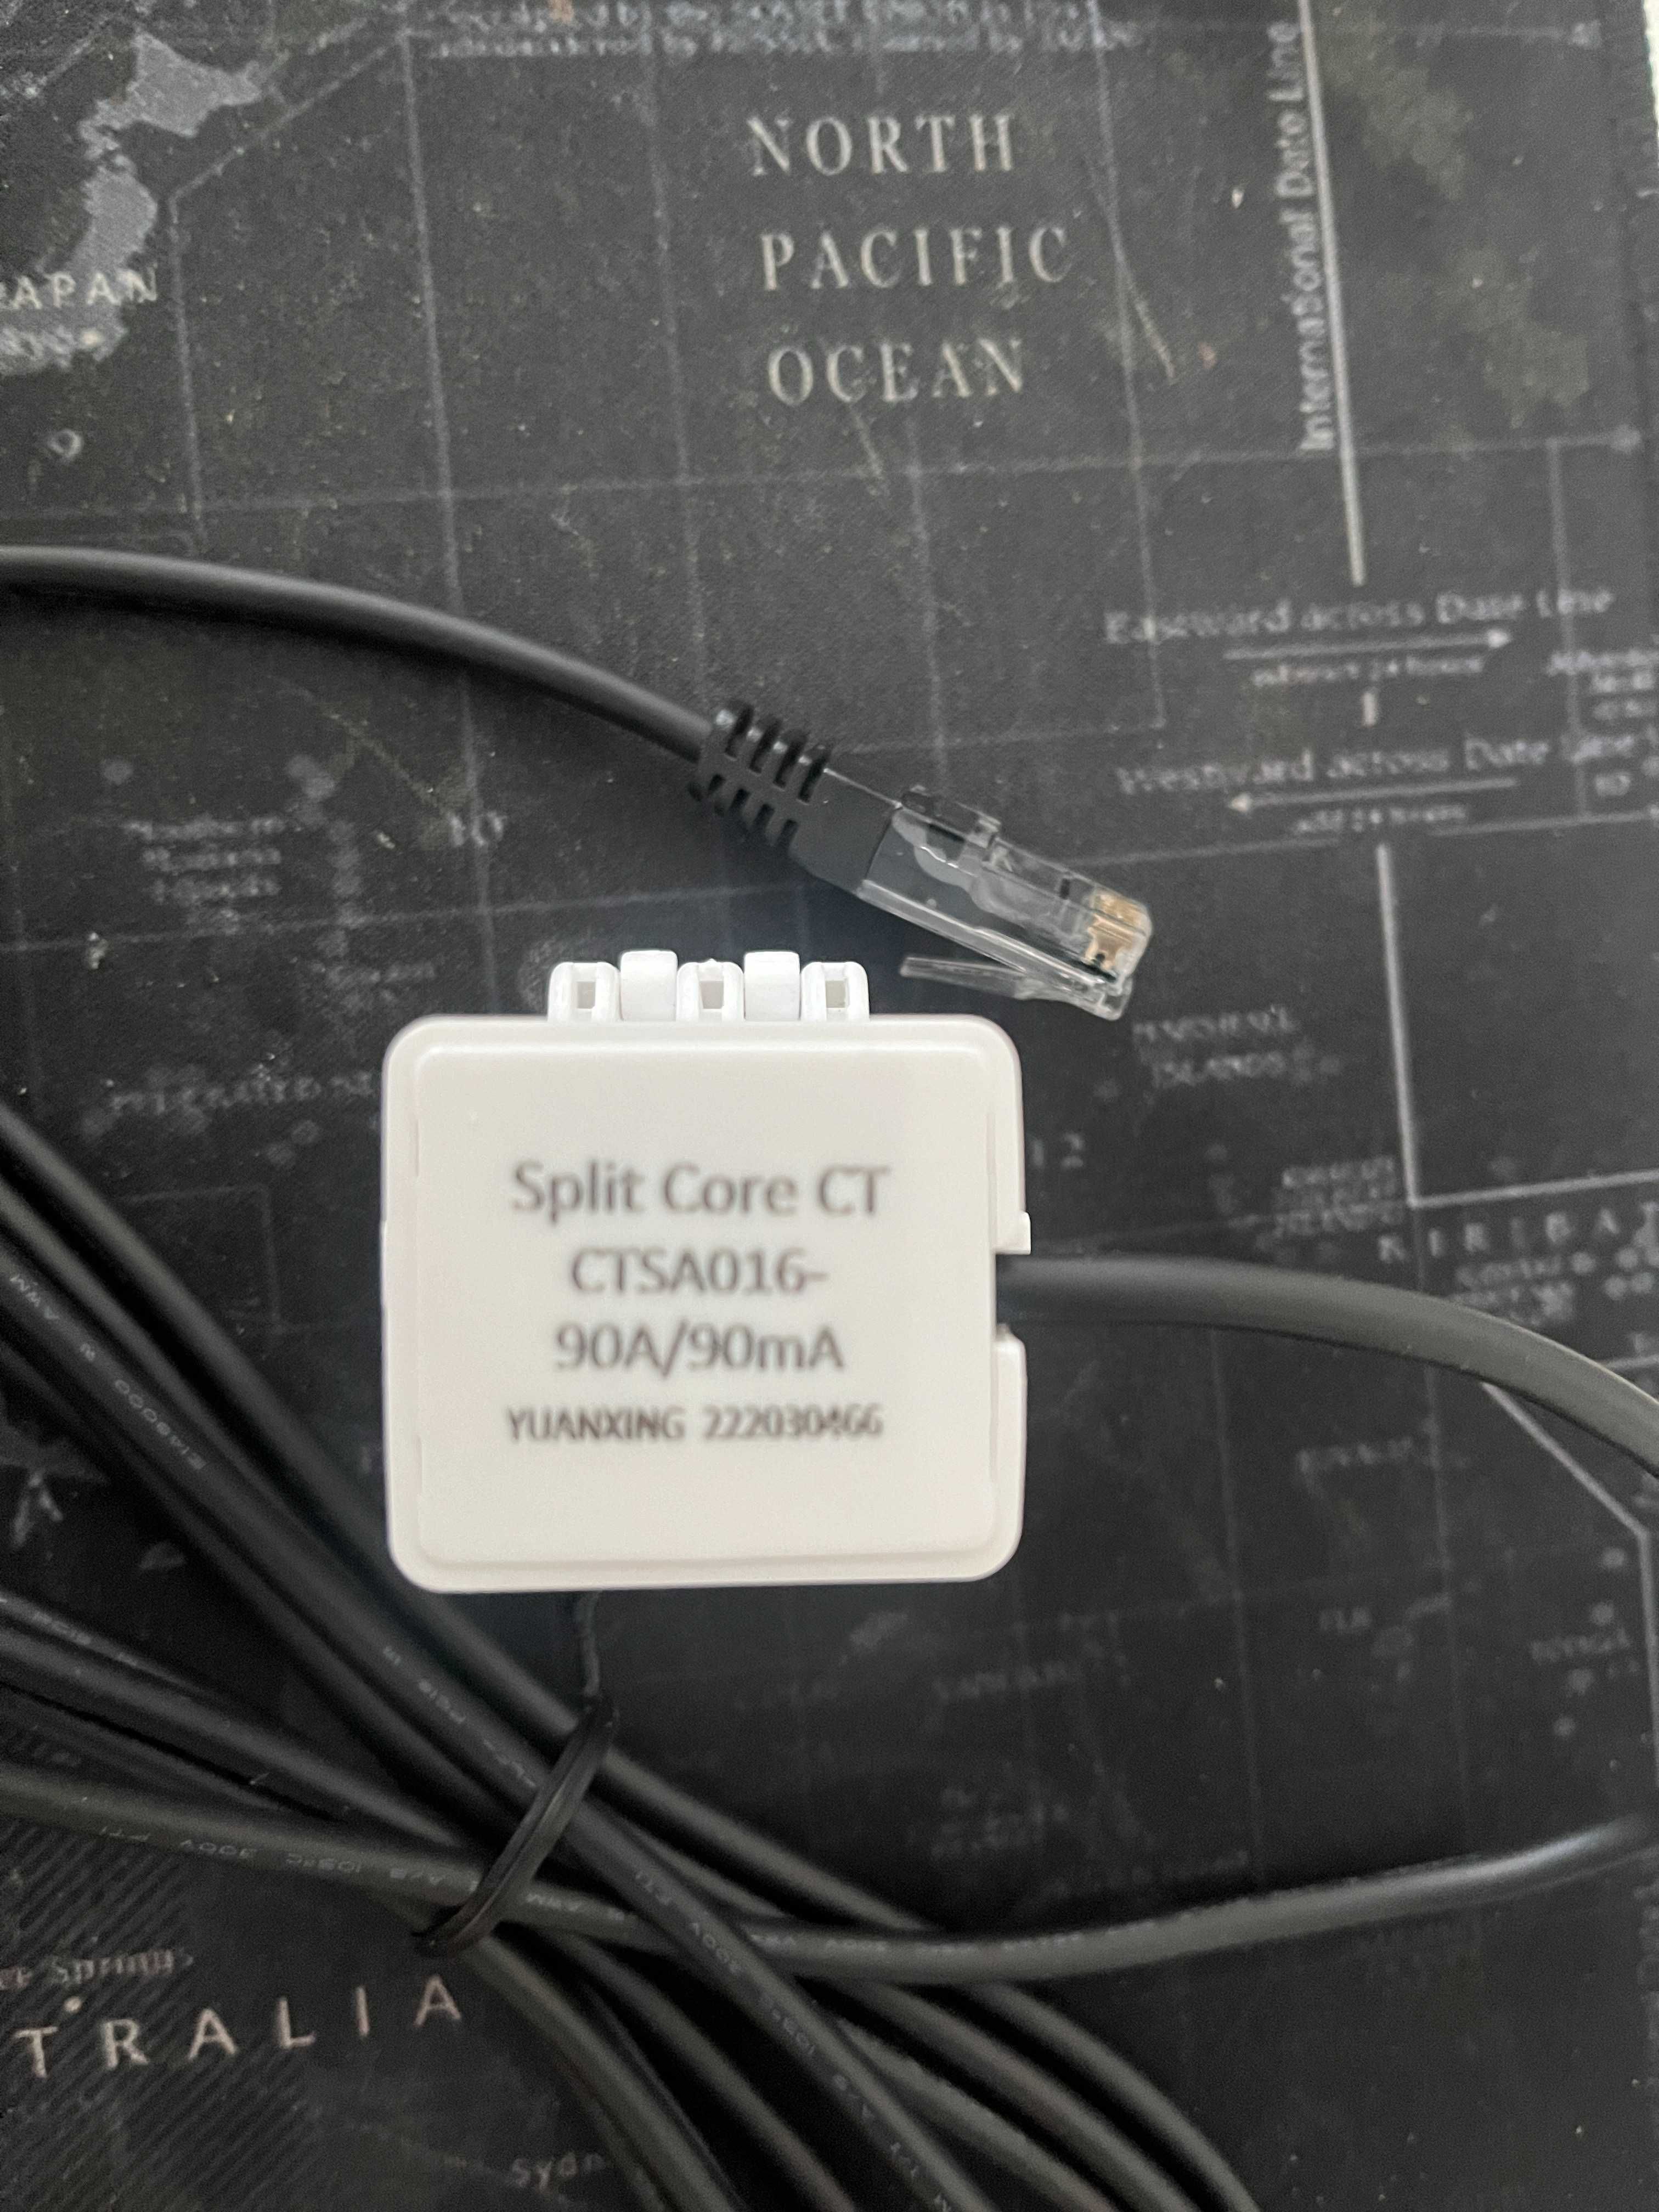 Split core CT CTSA016 90/90mA RJ45